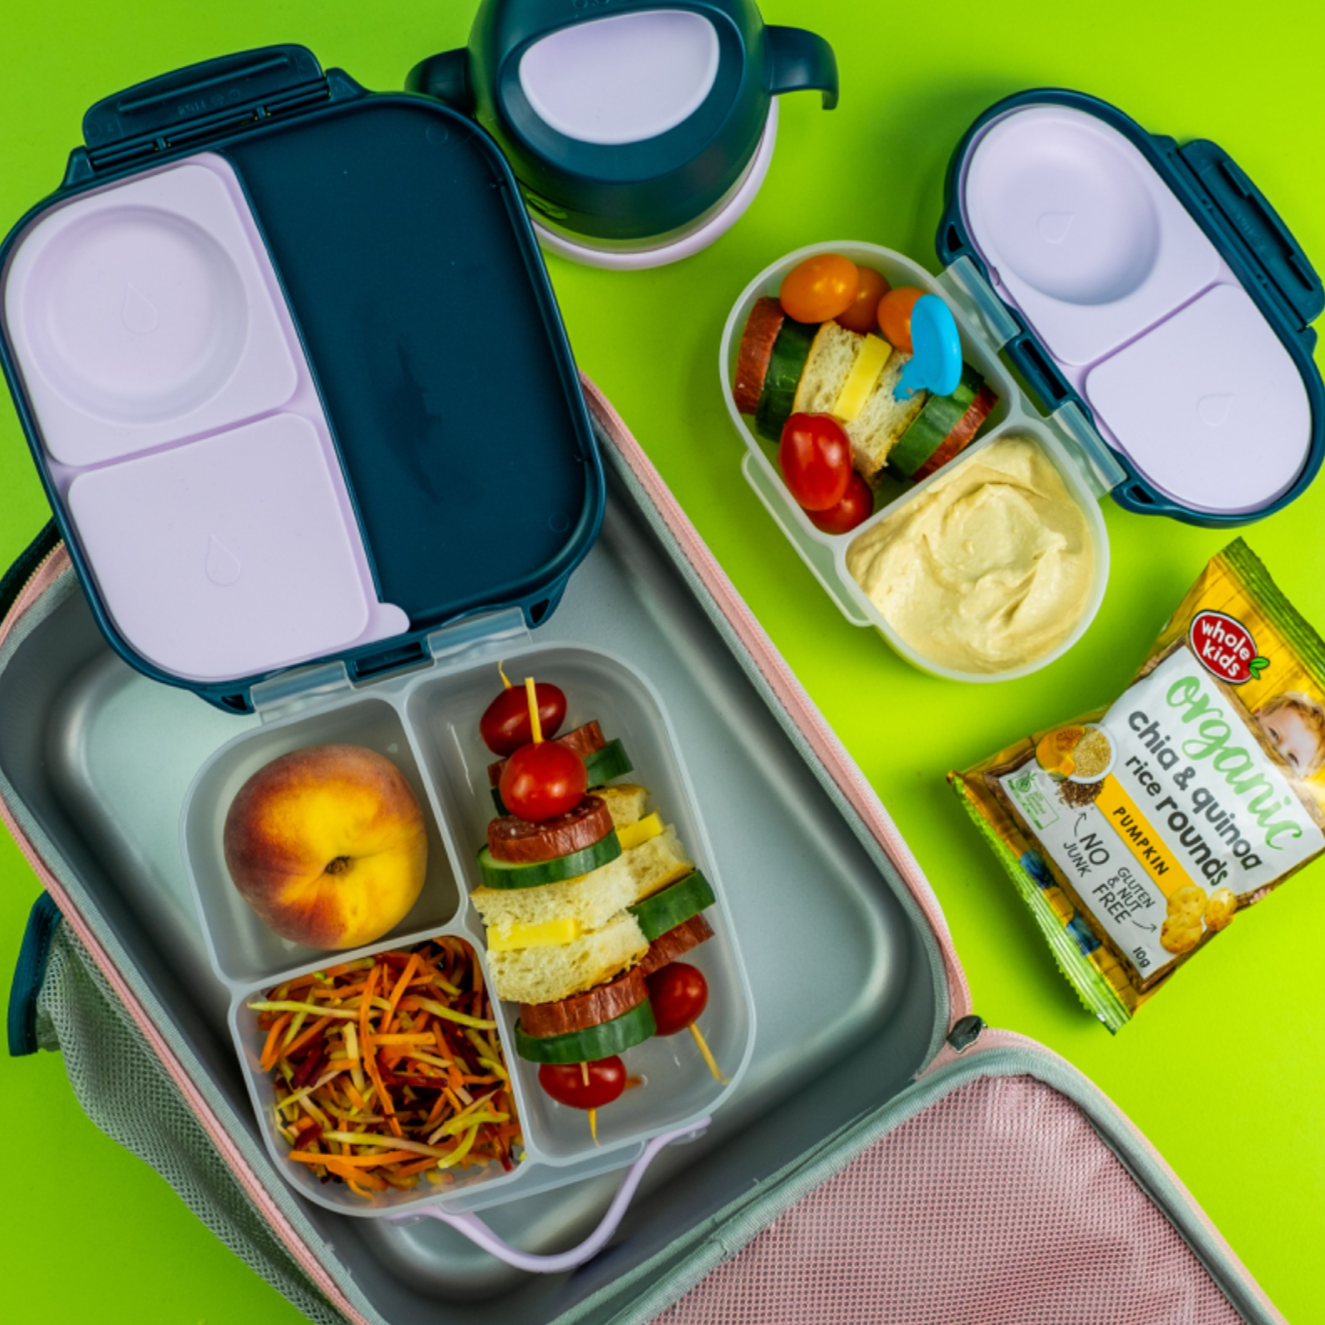 b.box - Mini Lunchbox Ocean Breeze